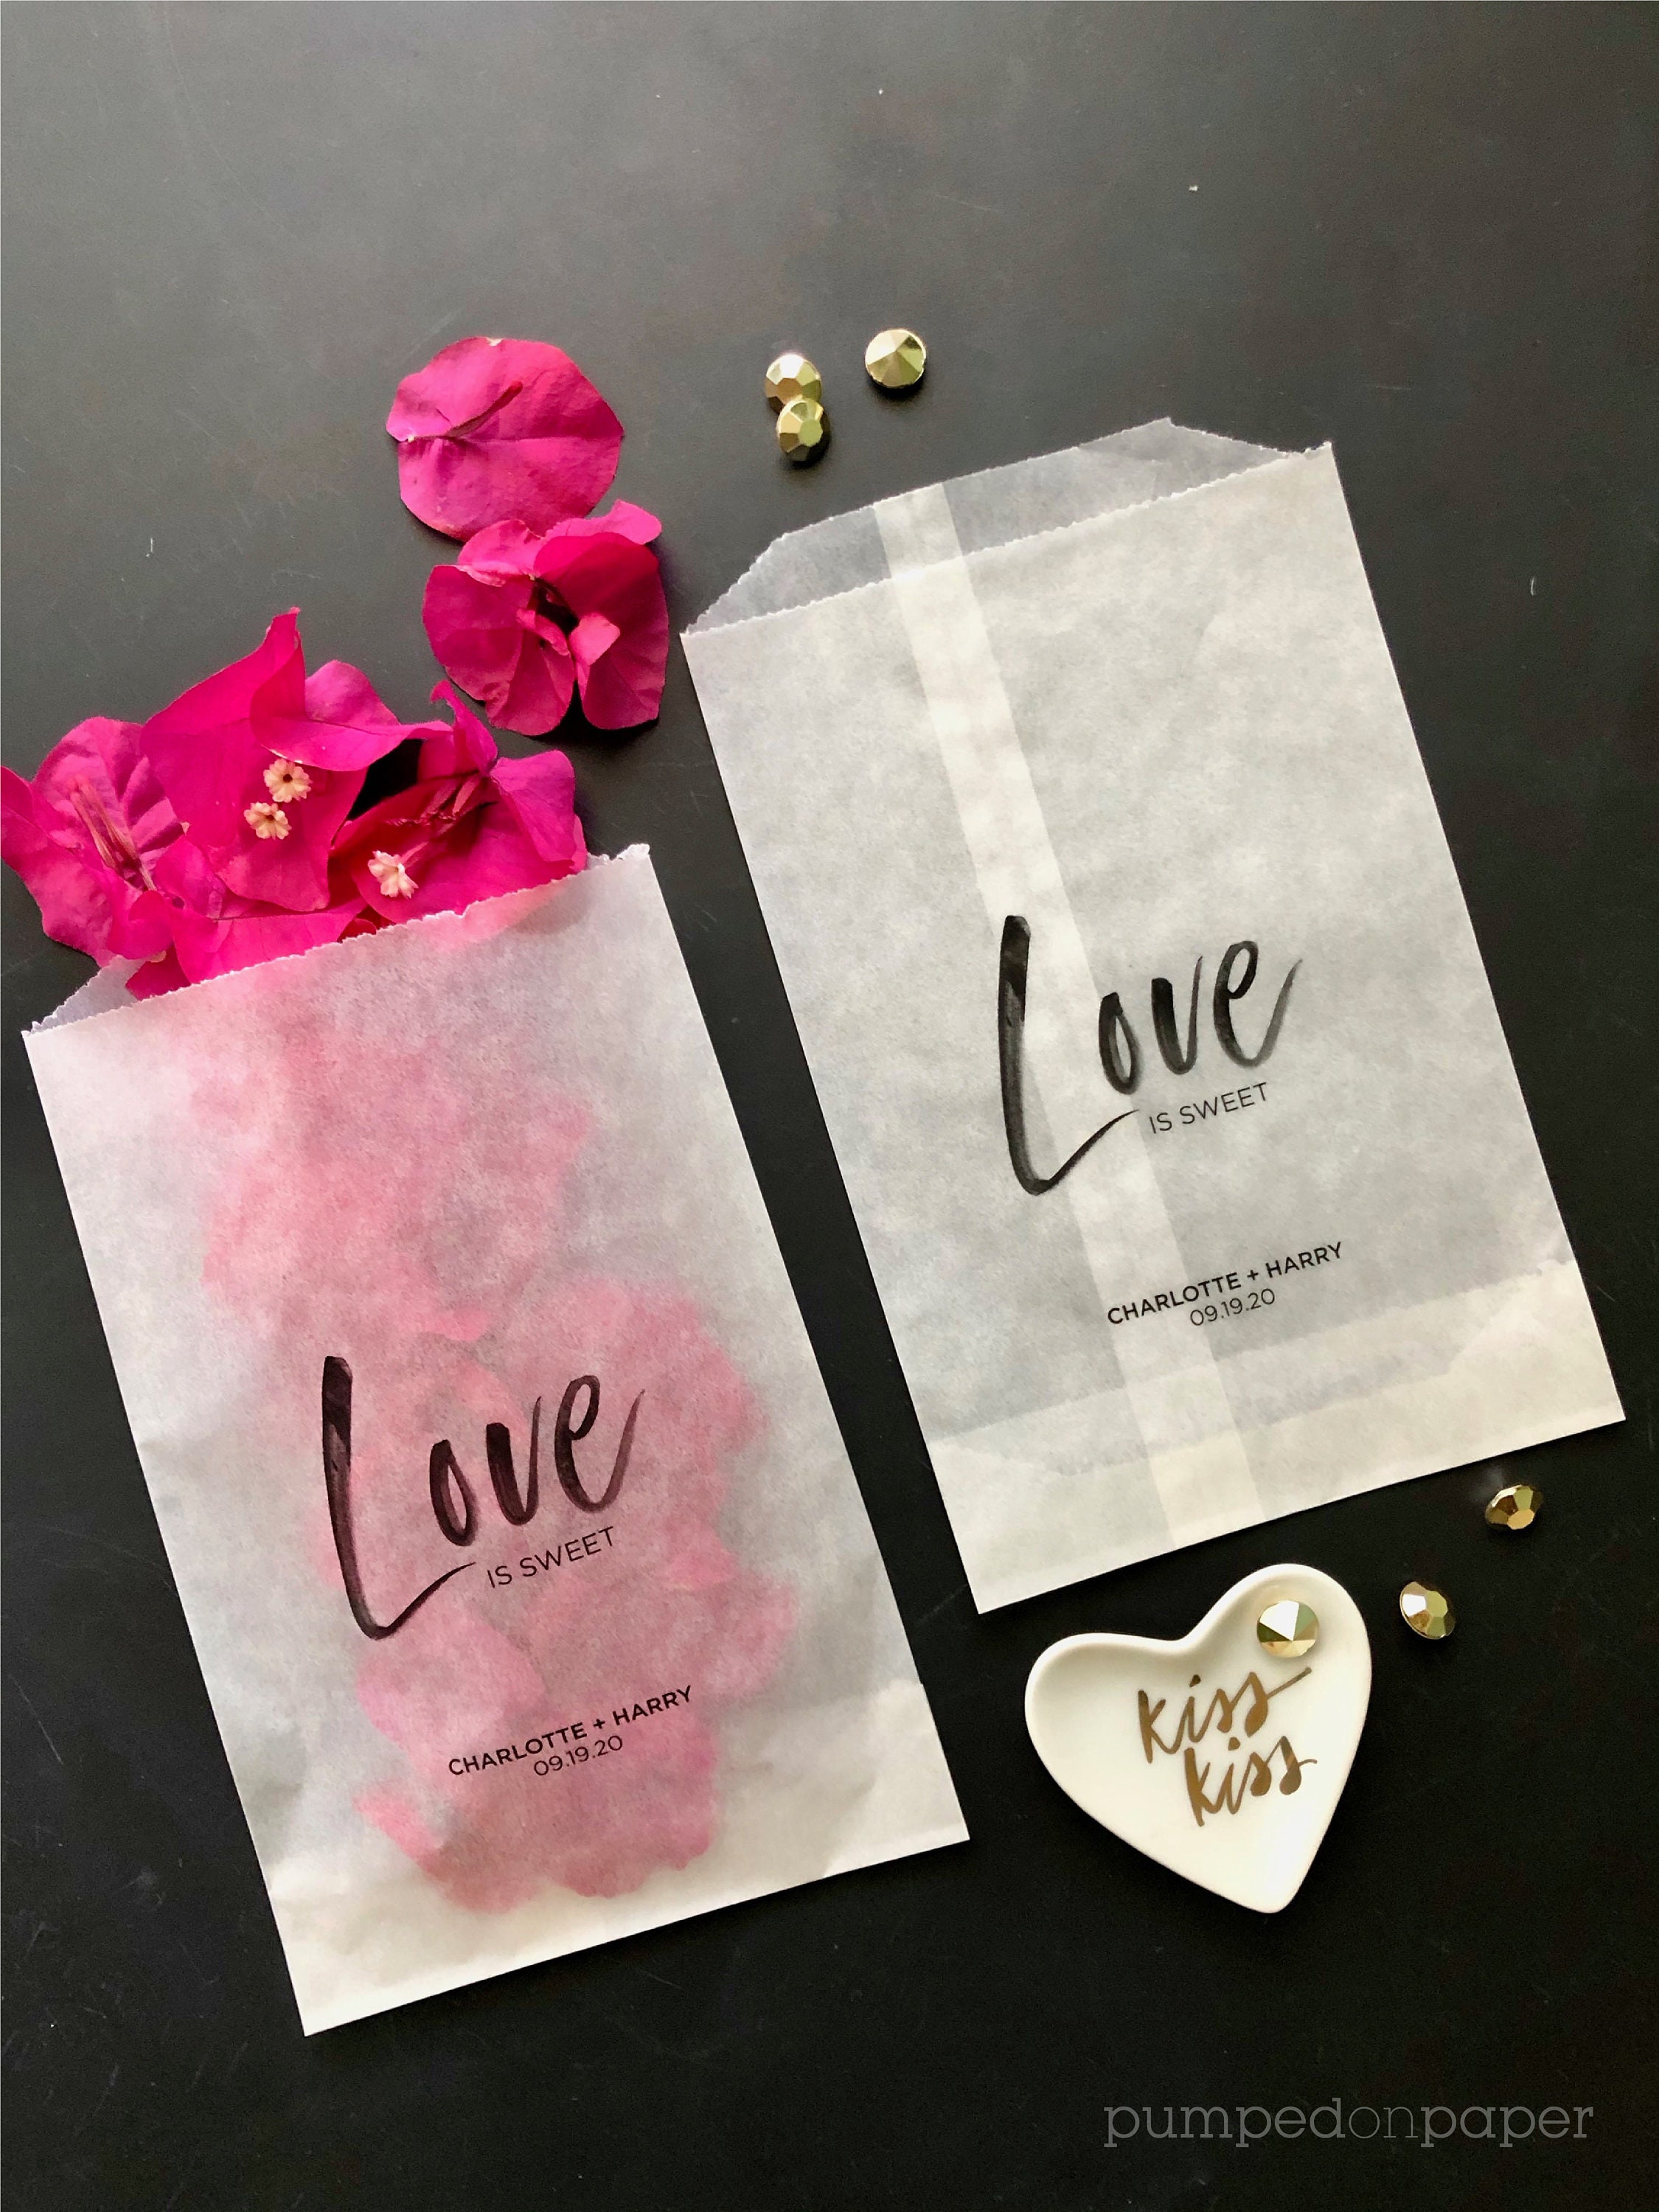 Sacchetti personalizzati in carta pergamino (glassine bags) per confettata  di battesimo, matrimonio, per le vostre cre…